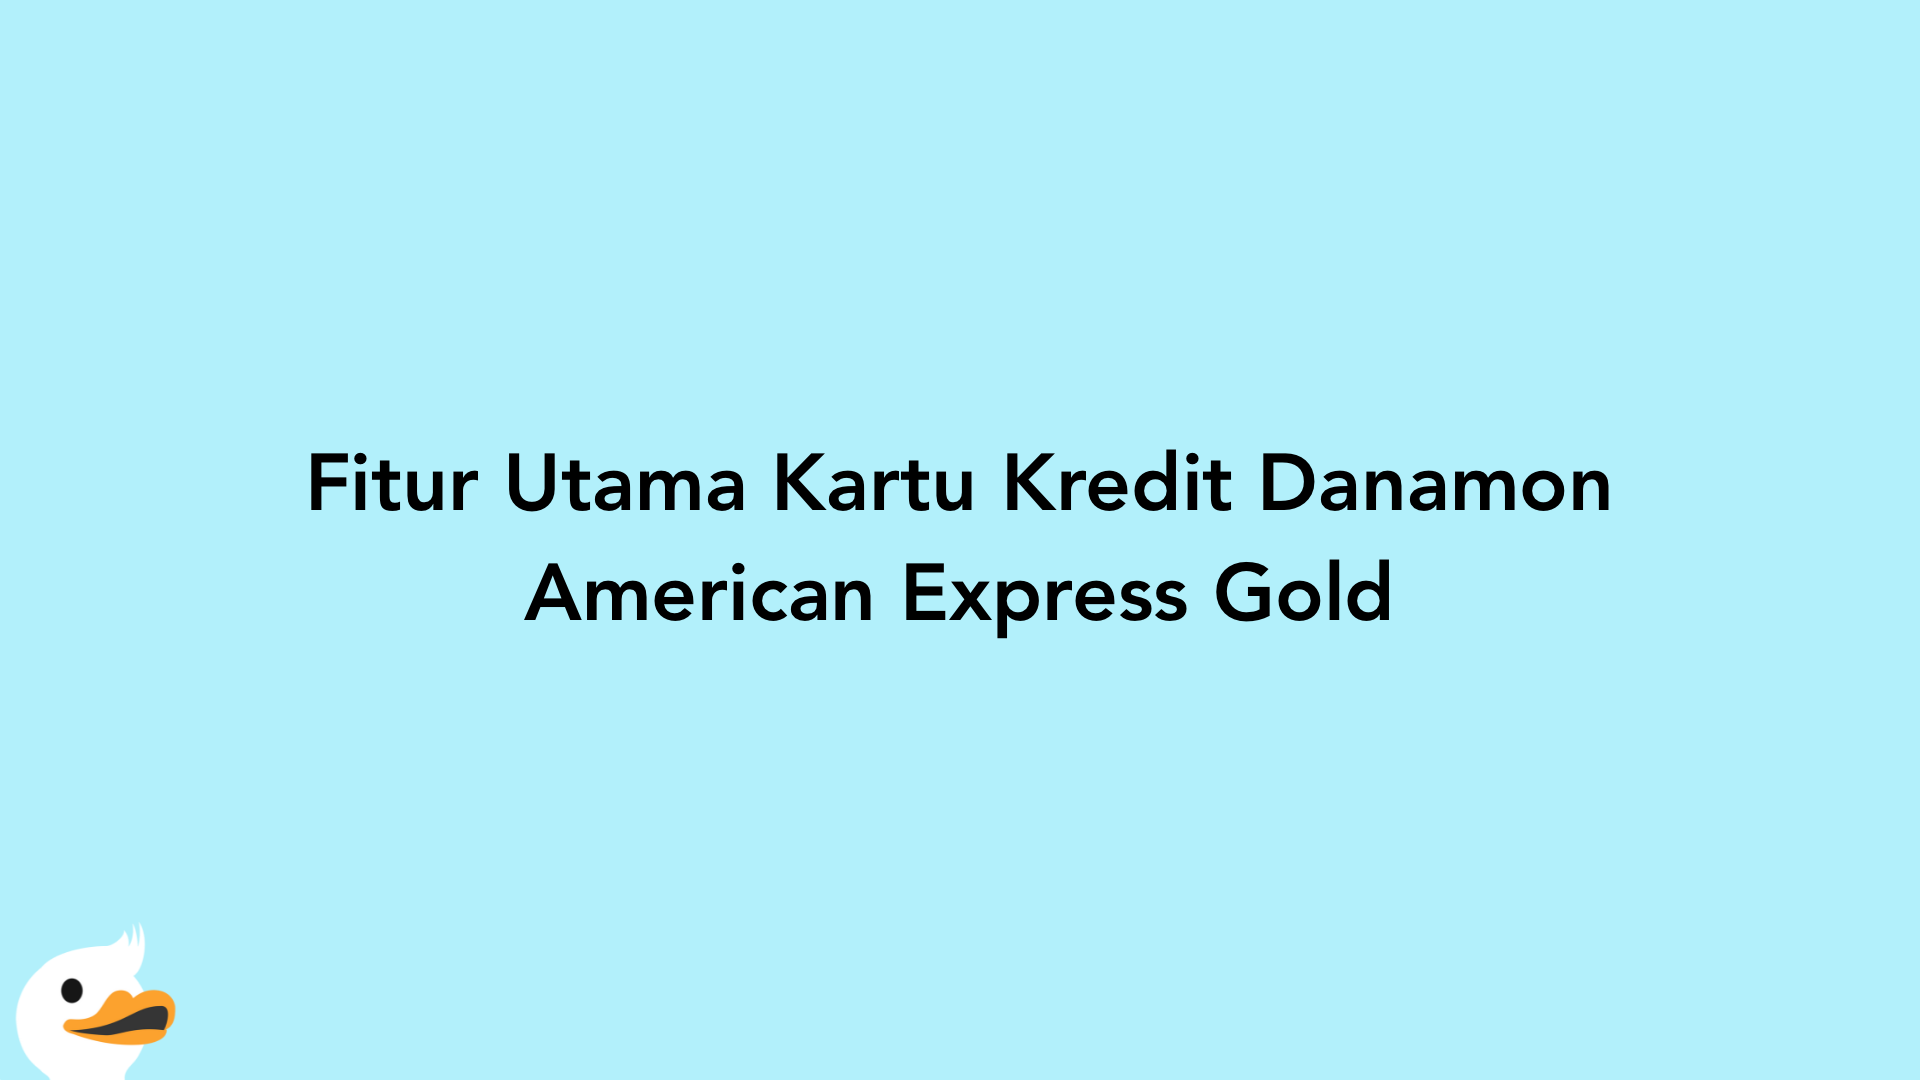 Fitur Utama Kartu Kredit Danamon American Express Gold